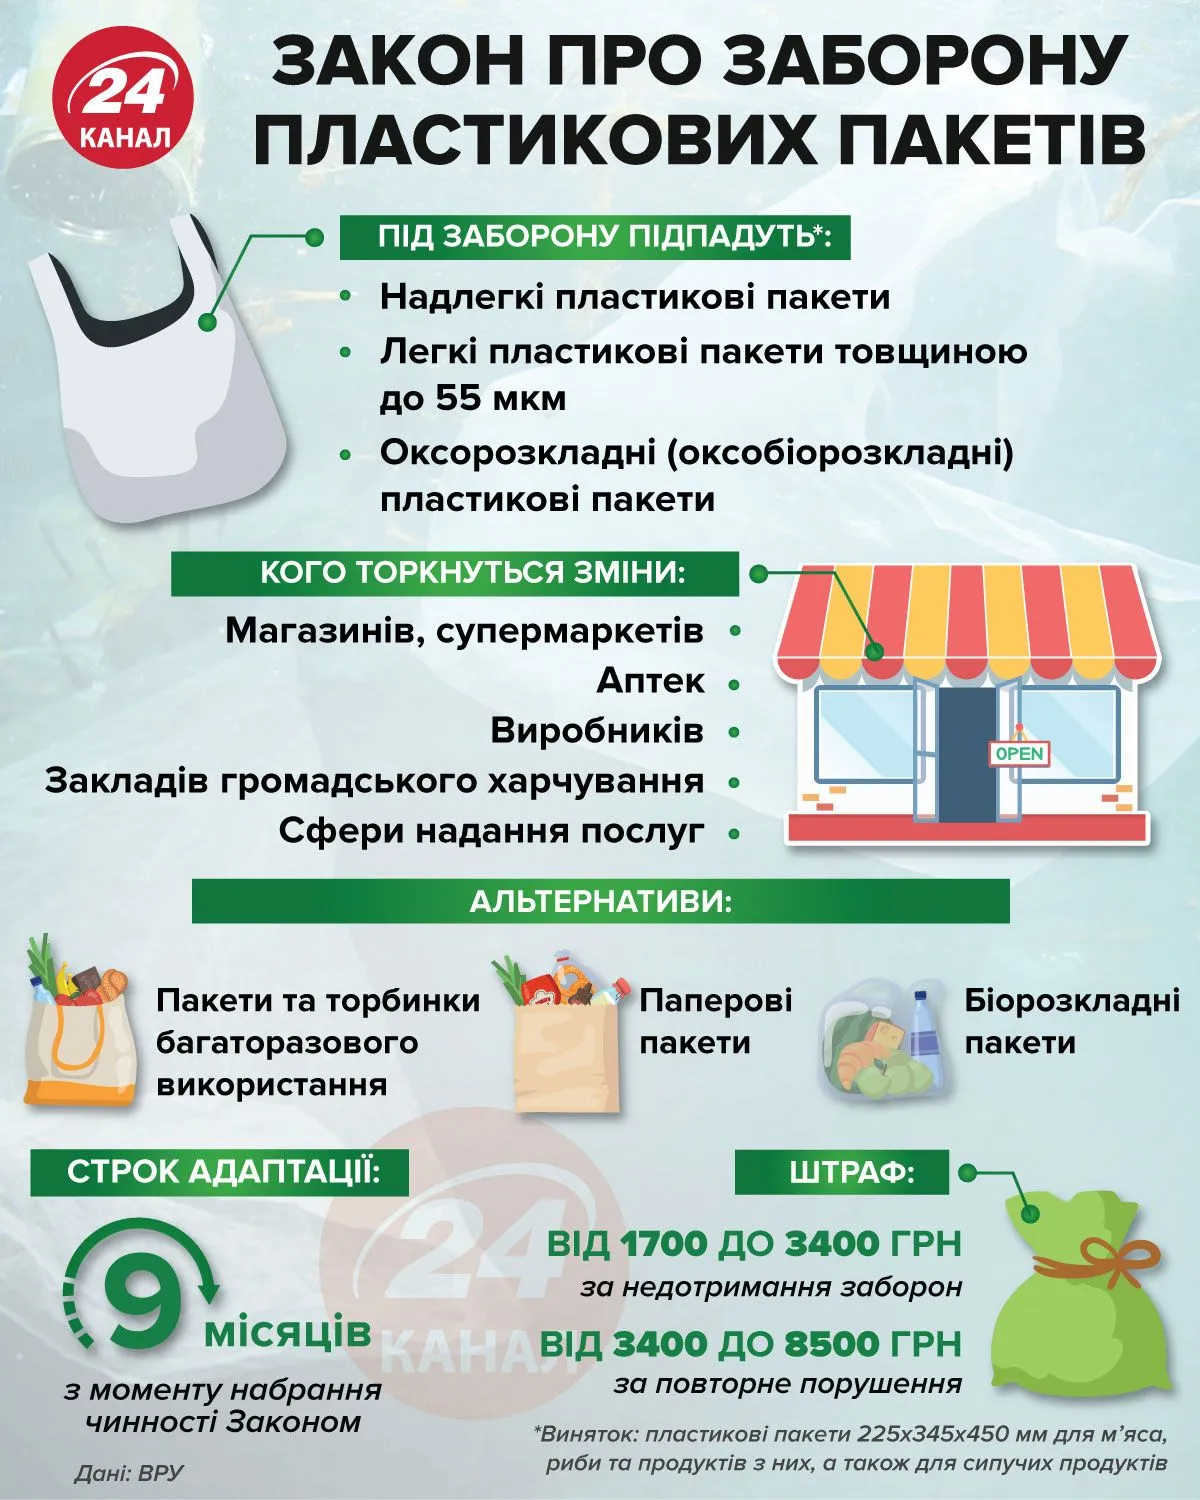 Головне про заборону пластикових пакетів в Україні